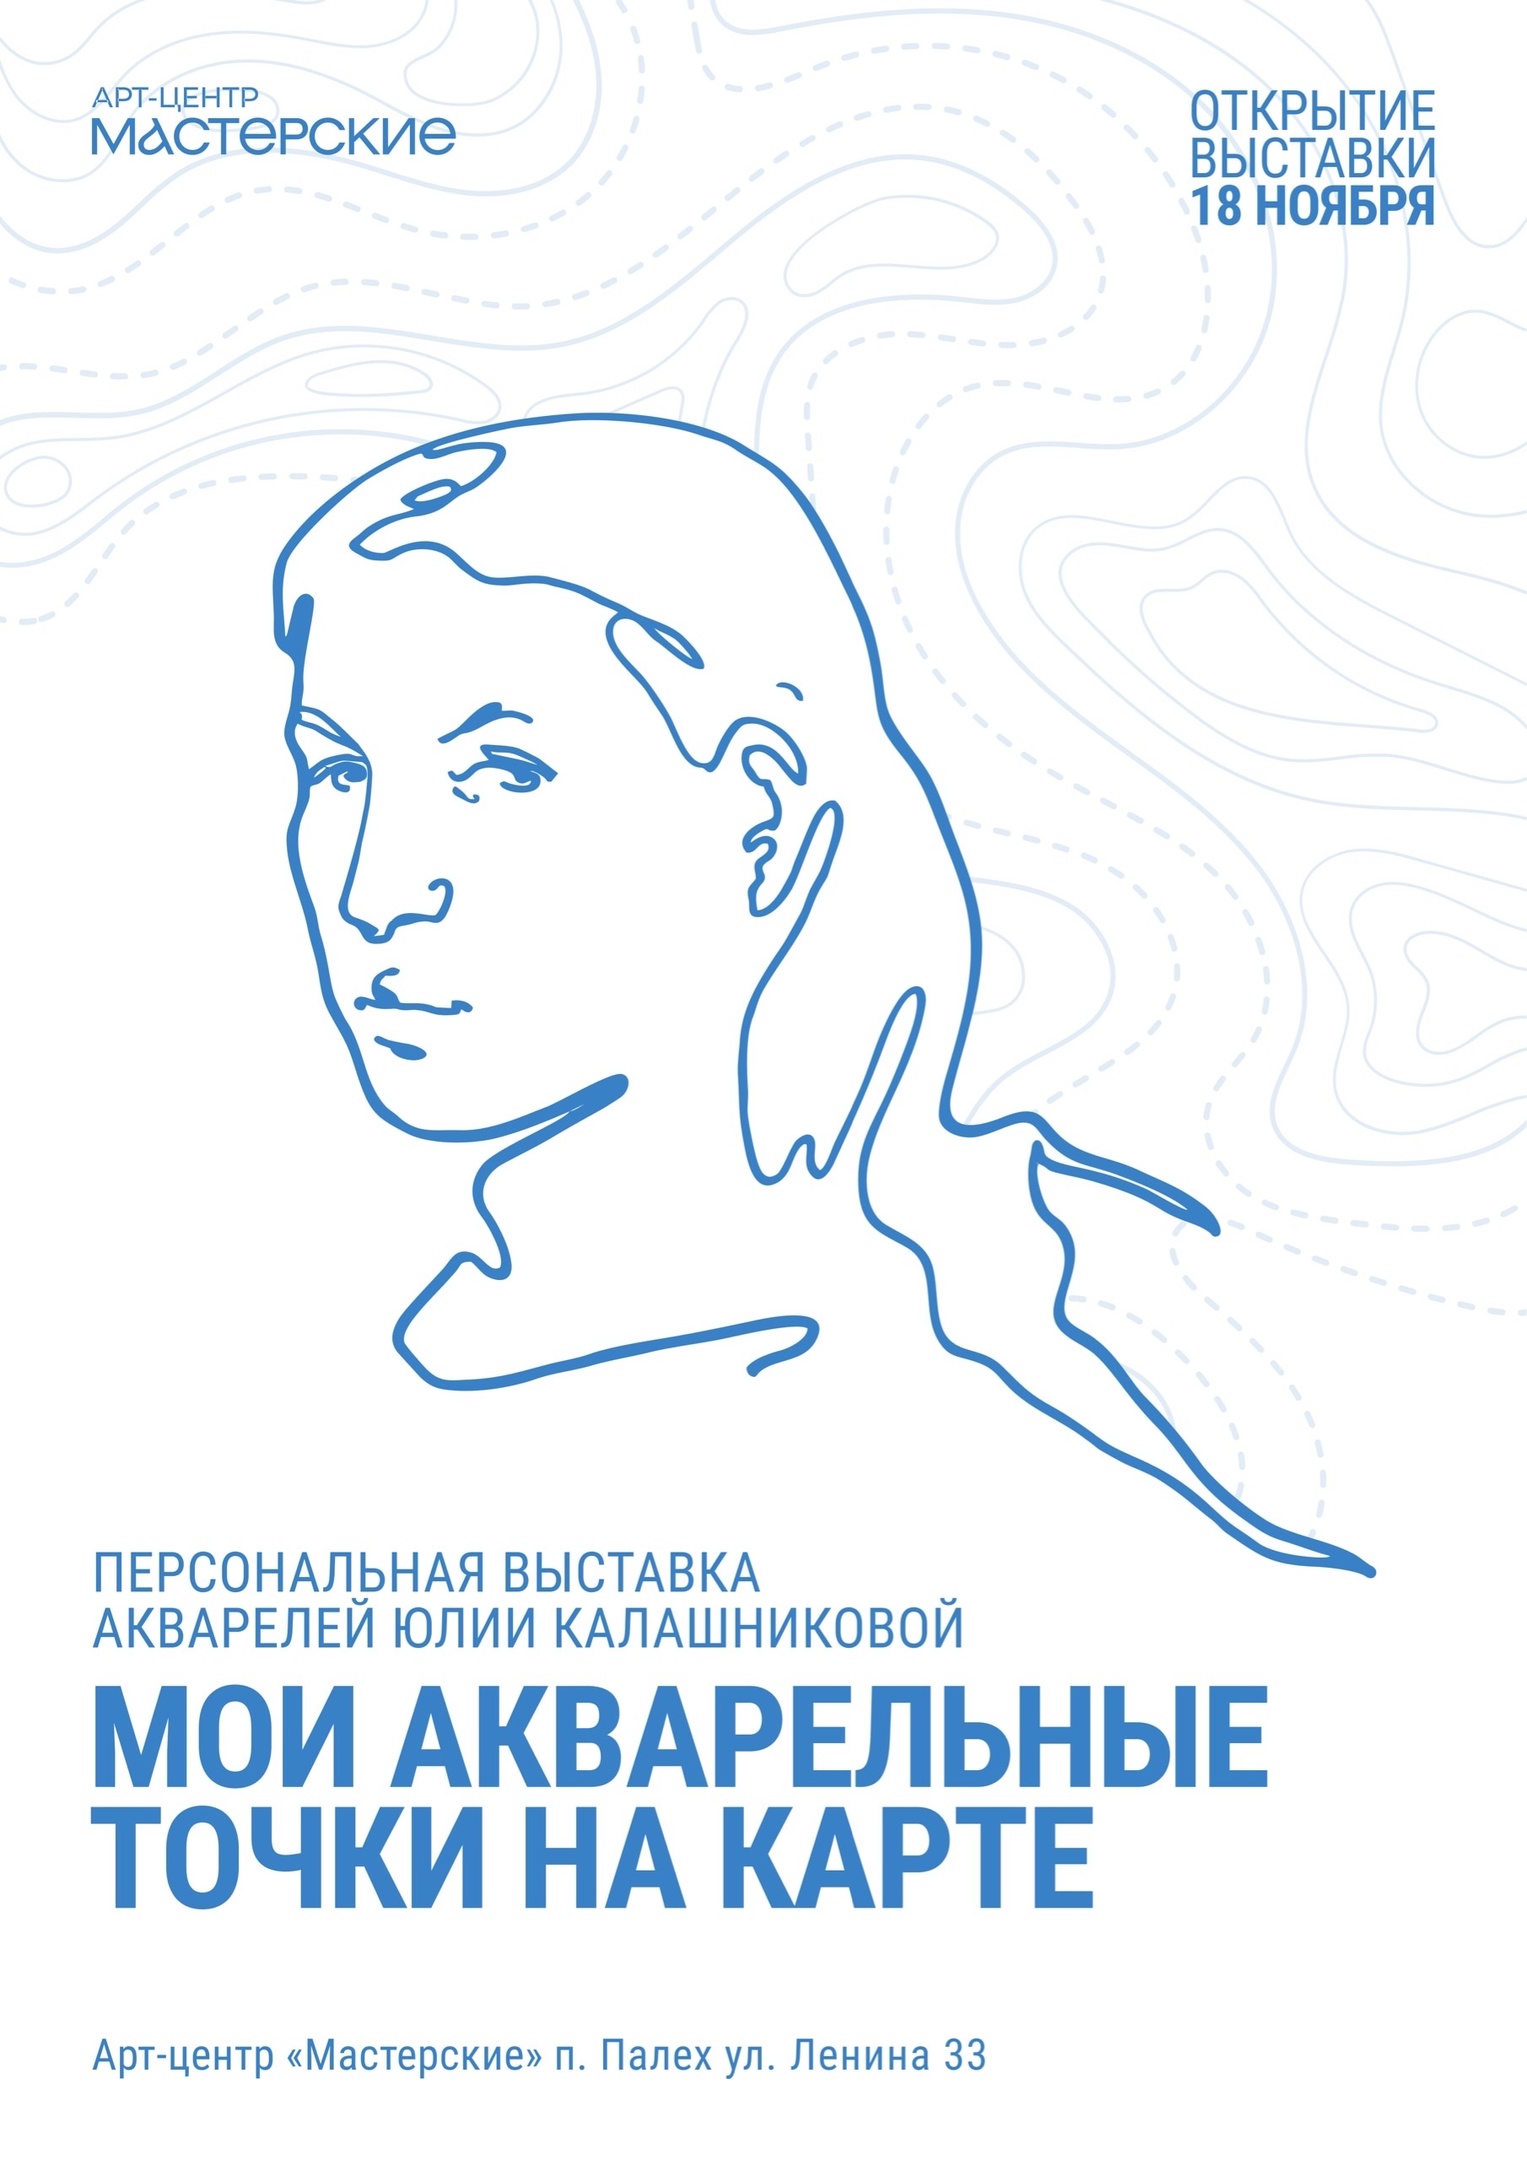 Персональная выставка акварелей Юлии Калашниковой «Мои акварельные точки на карте».